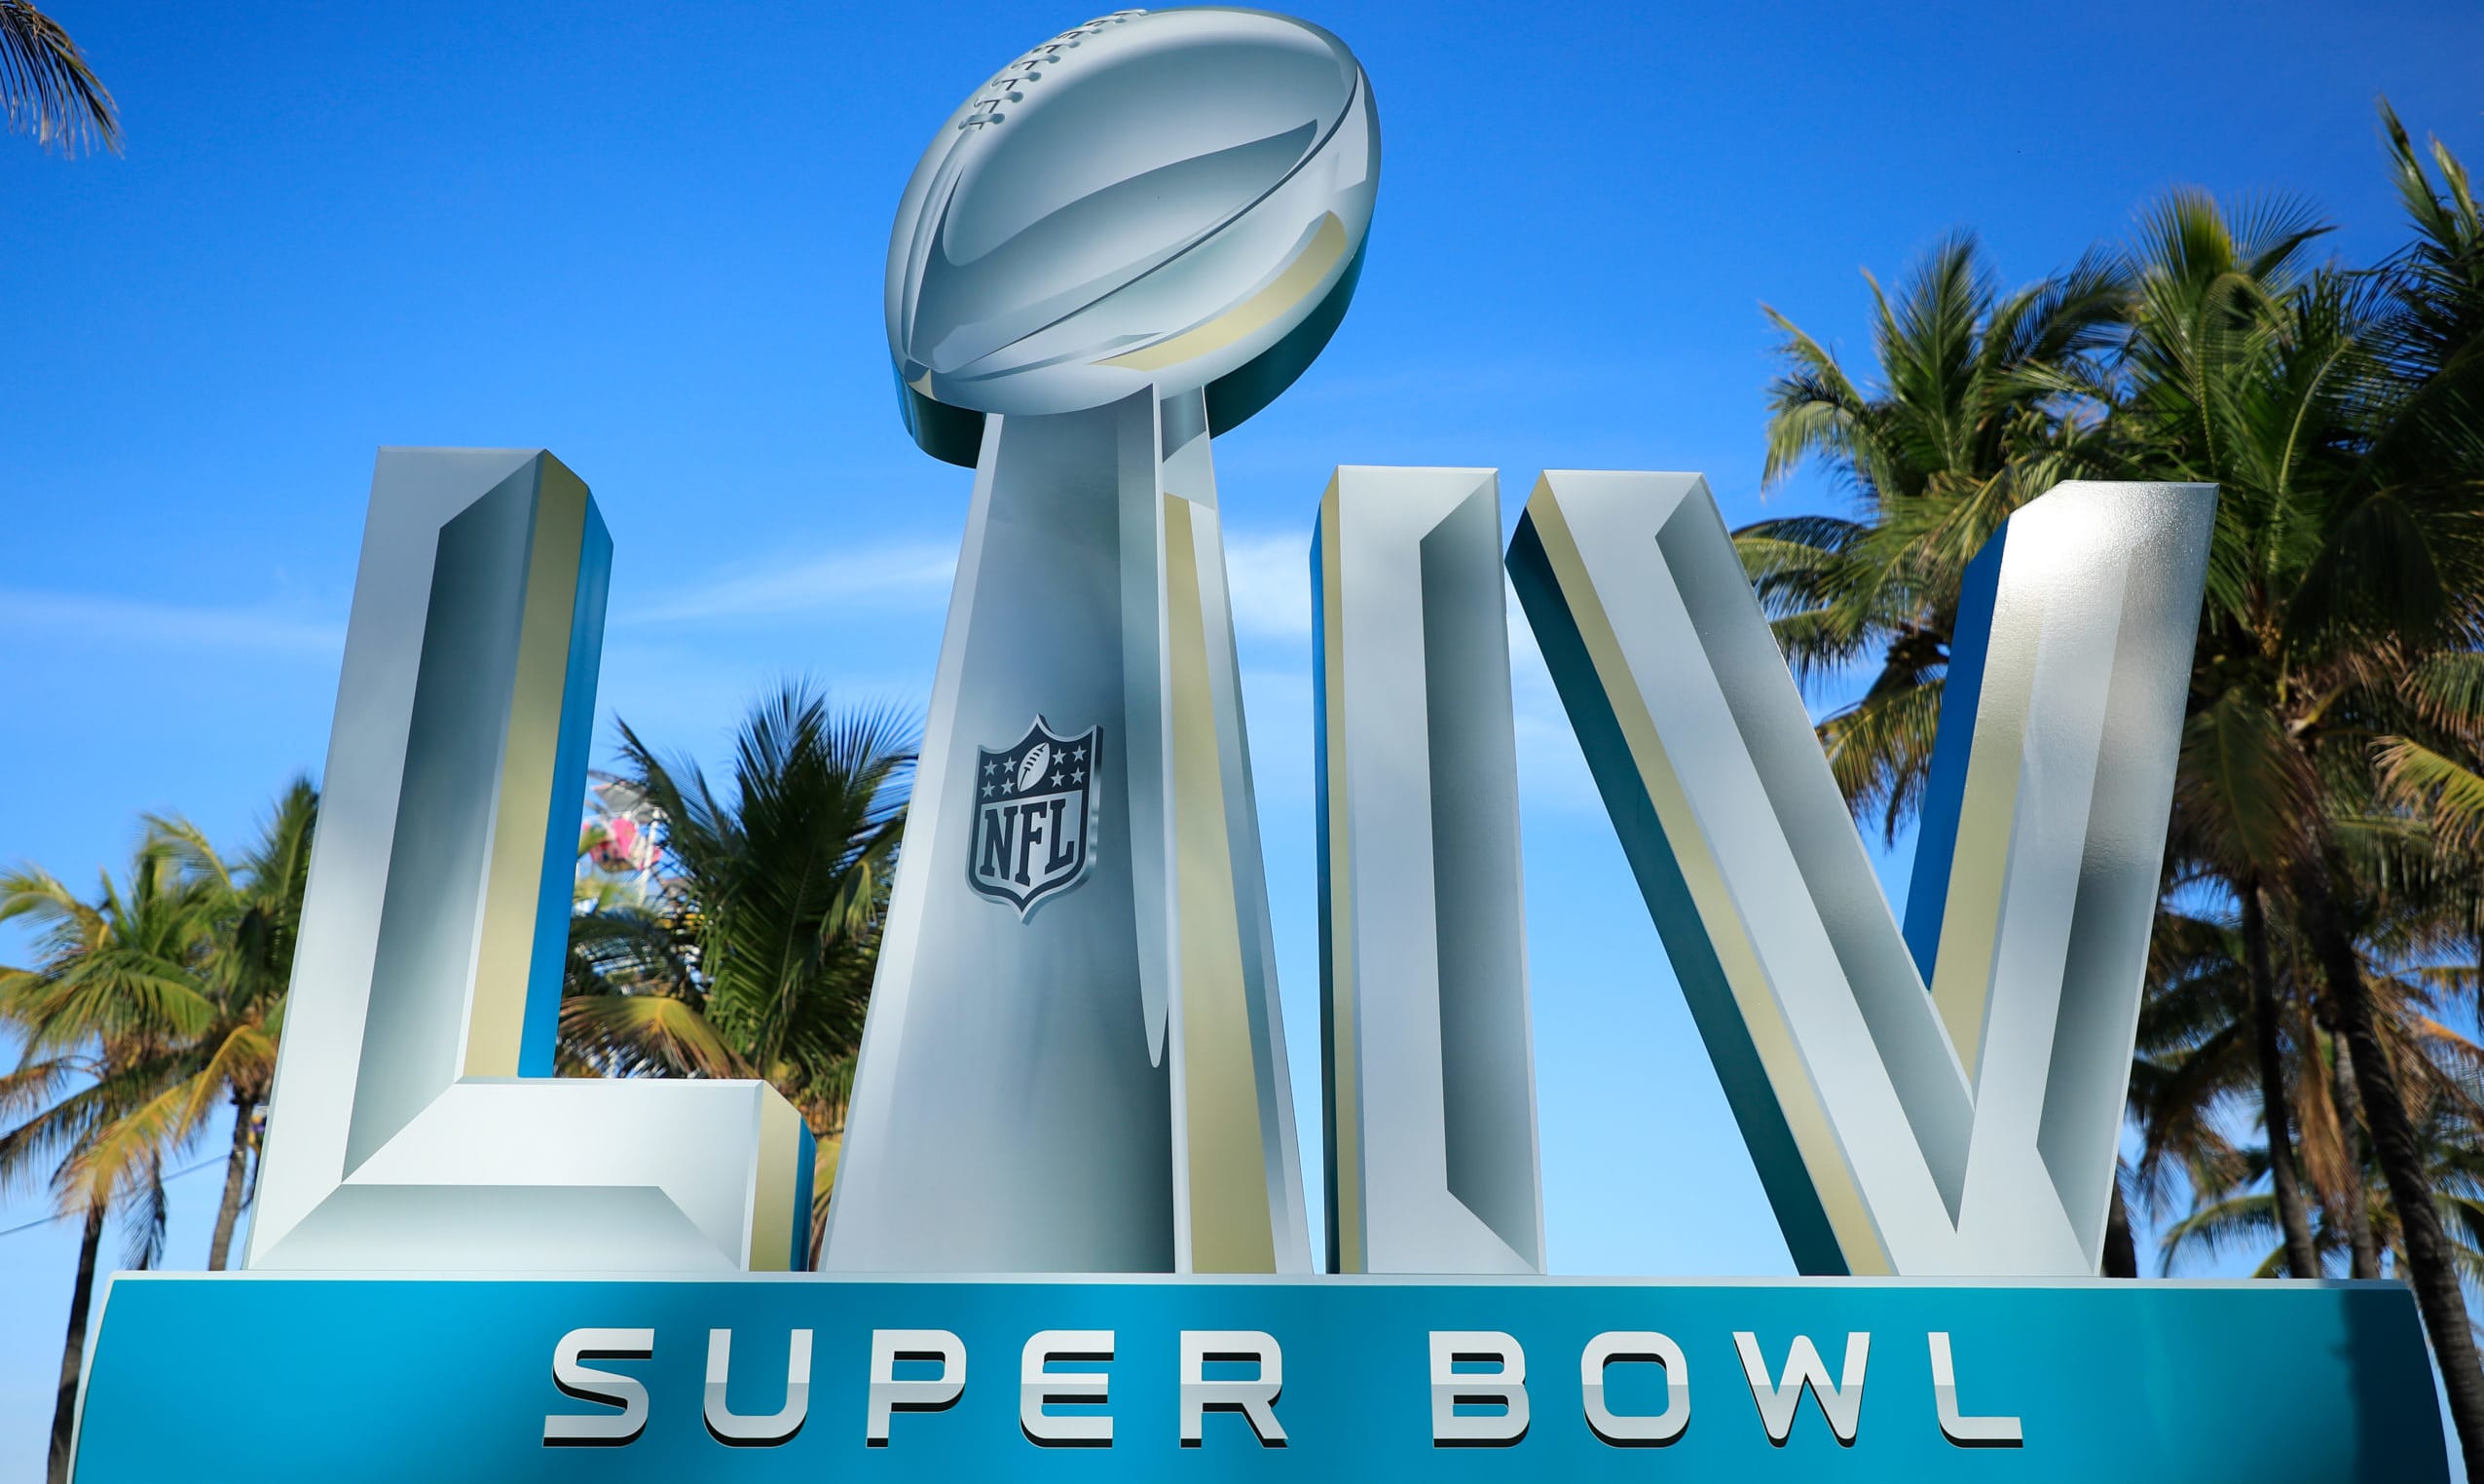 Super Bowl LIV: pronostico, quote e tutto quello che c'è da sapere sull'evento che ferma l'America